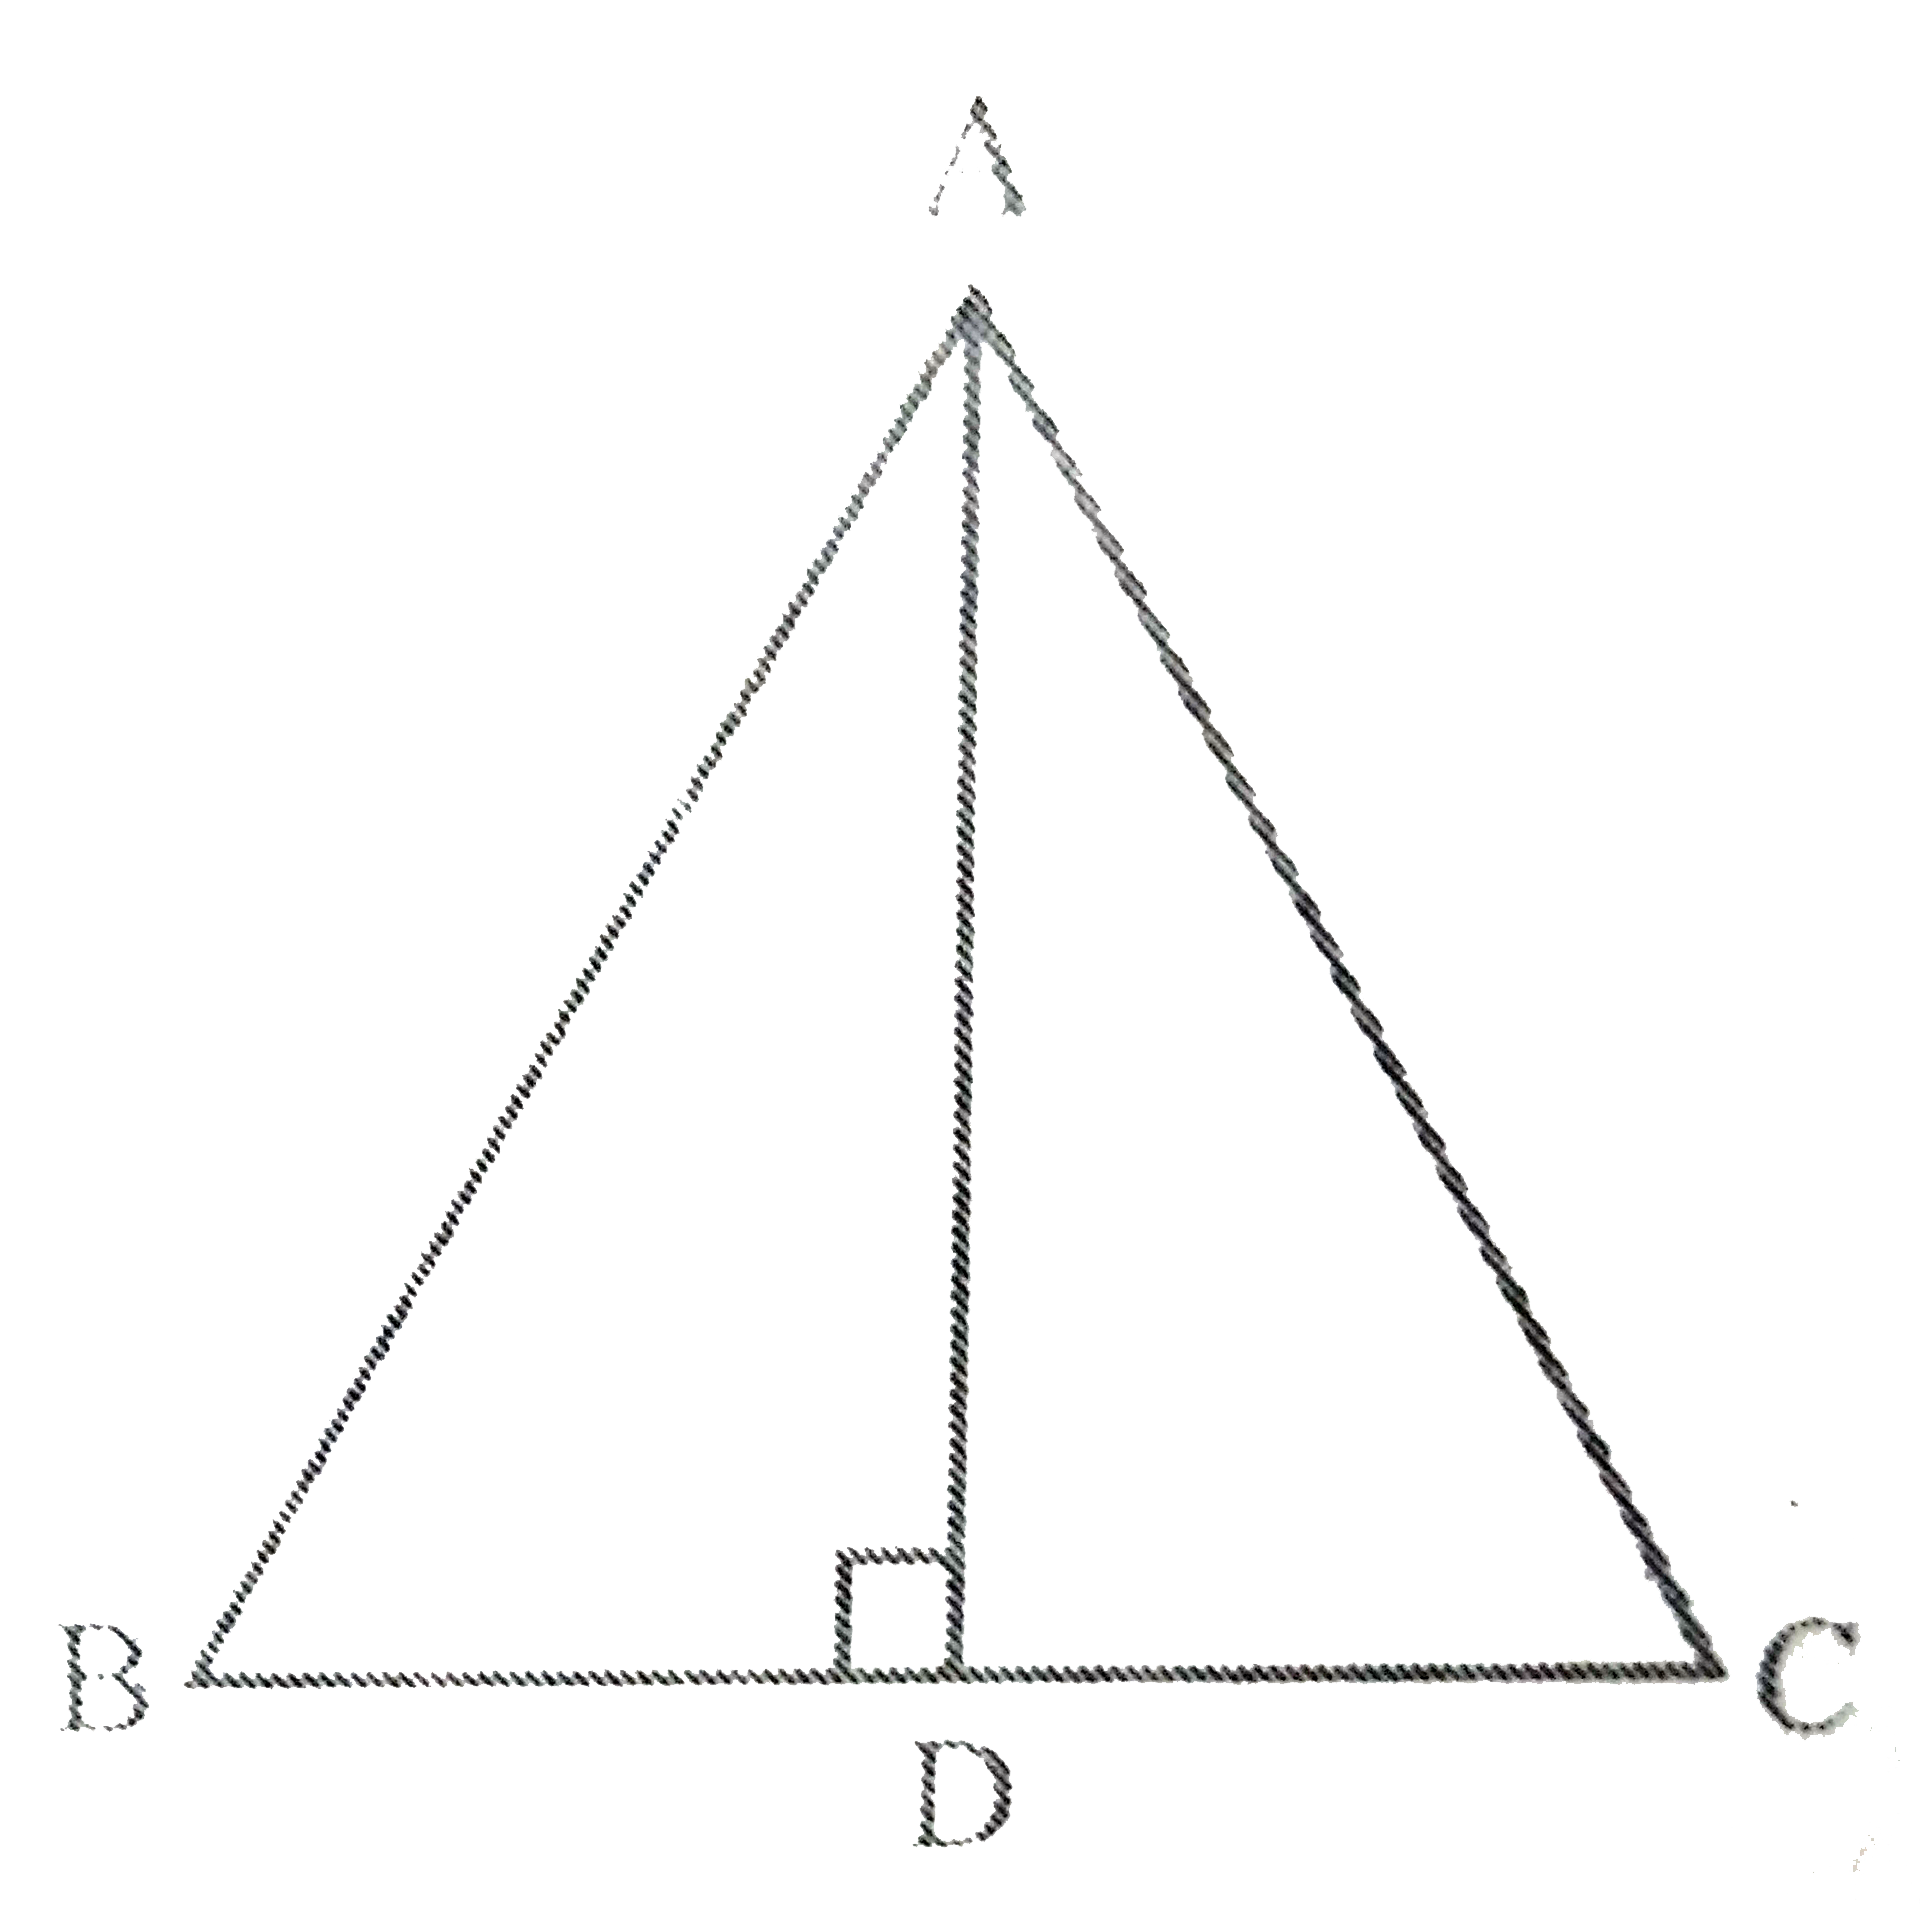 Delta ABC   में AD भुजा BC का लम्ब समद्विभाजक है। दर्शाइए कि Delta ABC  एक समद्विबाहु त्रिभुज है, जिसमें AB = AC है।